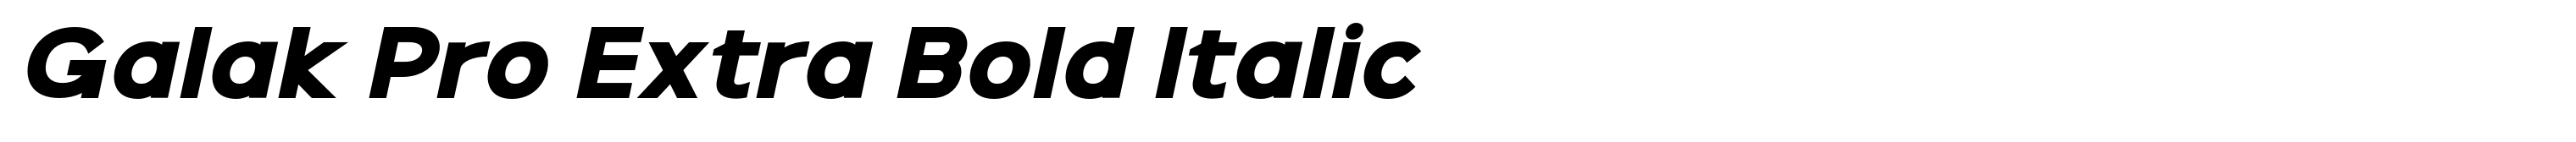 Galak Pro Extra Bold Italic